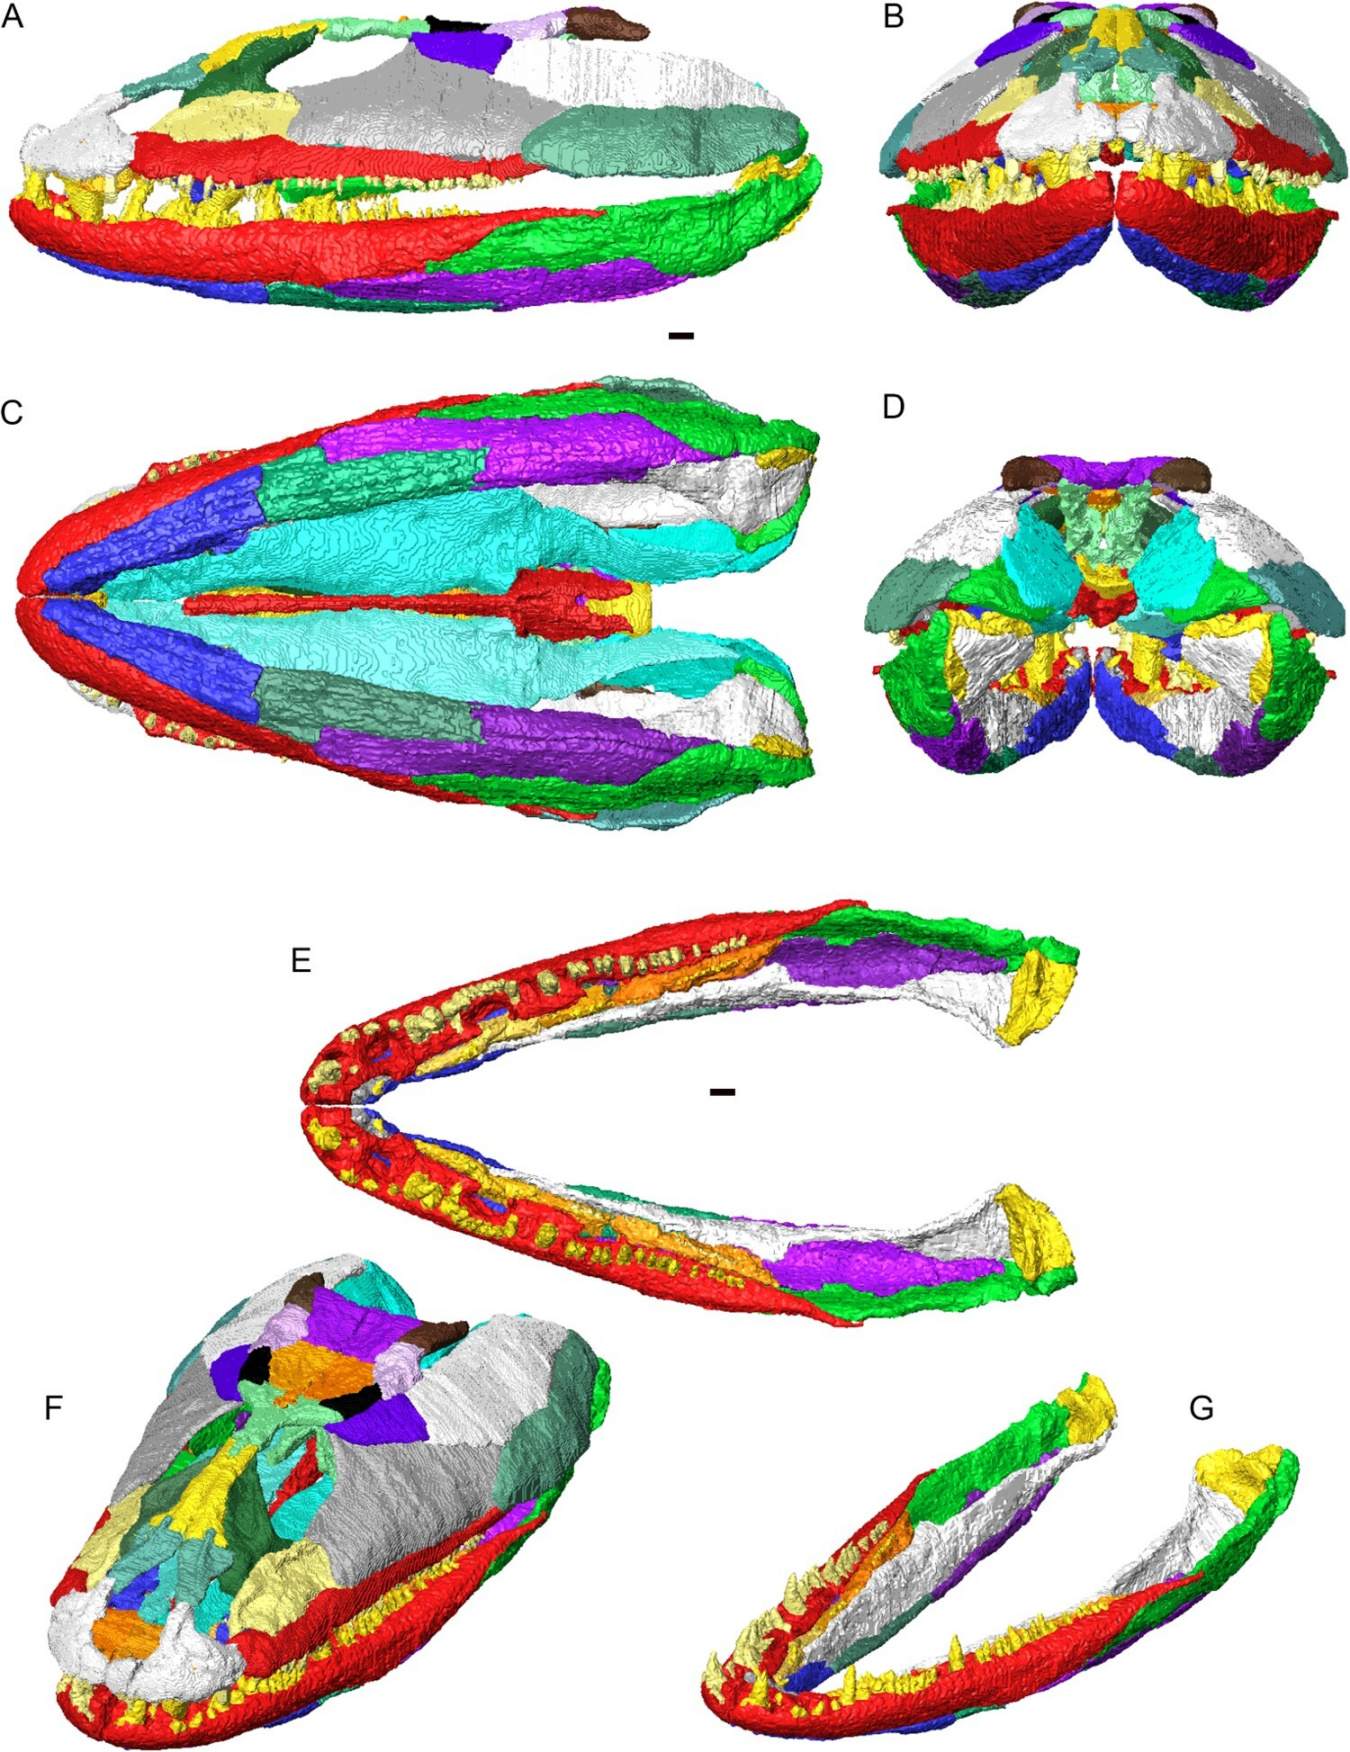 आर्टिक्यूलेशन में क्रैसिगिरिनस स्कोटिकस के कपाल और निचले जबड़े का 3डी पुनर्निर्माण। अलग-अलग हड्डियों को अलग-अलग रंगों में दिखाया गया है। ए, बाएं पार्श्व दृश्य; बी, पूर्वकाल का दृश्य; सी, वेंट्रल व्यू; डी, पीछे का दृश्य; पृष्ठीय दृश्य में ई, व्यक्त निचले जबड़े (कोई कपाल नहीं); एफ, कपाल और निचला जबड़ा पृष्ठीय तिरछे दृश्य में; जी, पृष्ठीय तिरछे दृश्य में निचले जबड़े को जोड़ा।